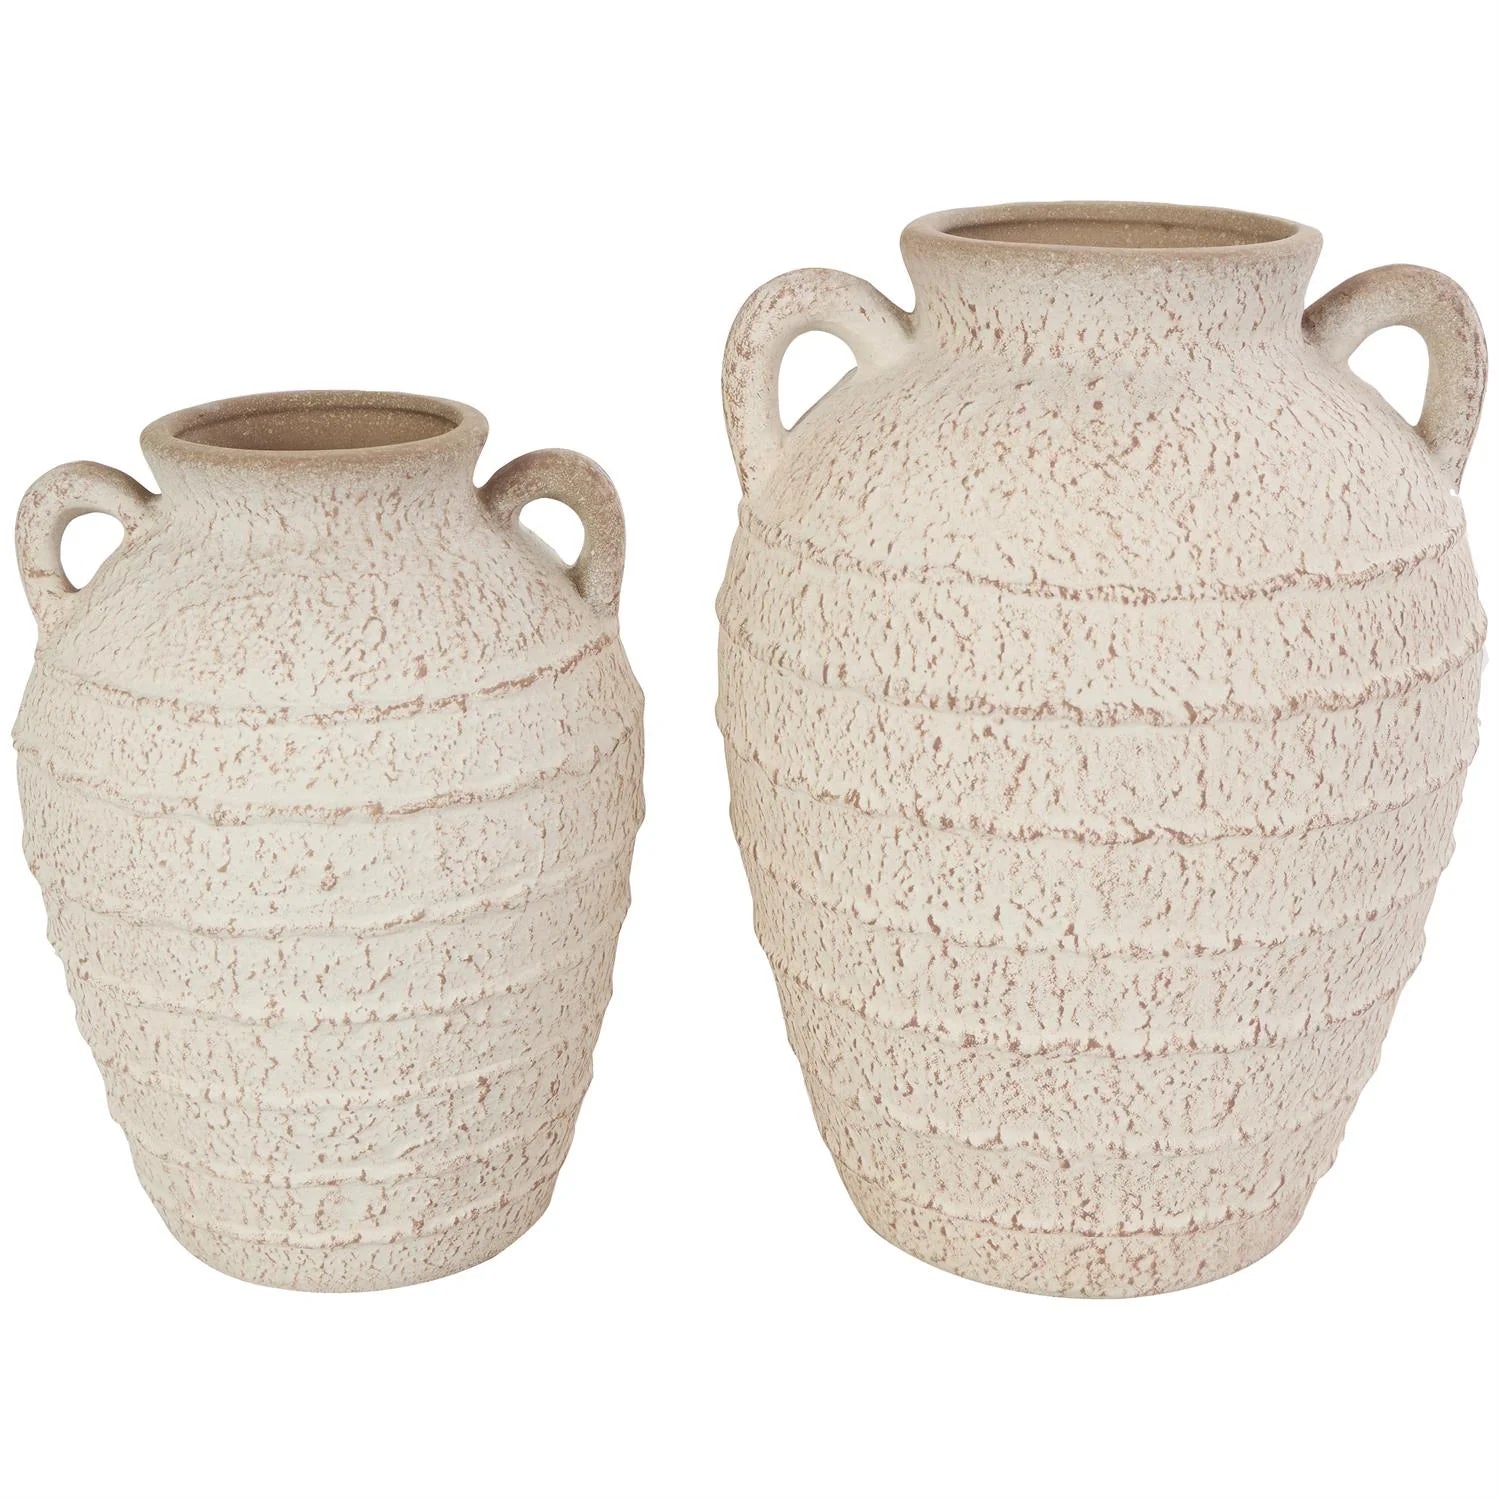 Cream Ceramic Textured Vase with Handles Set of 2